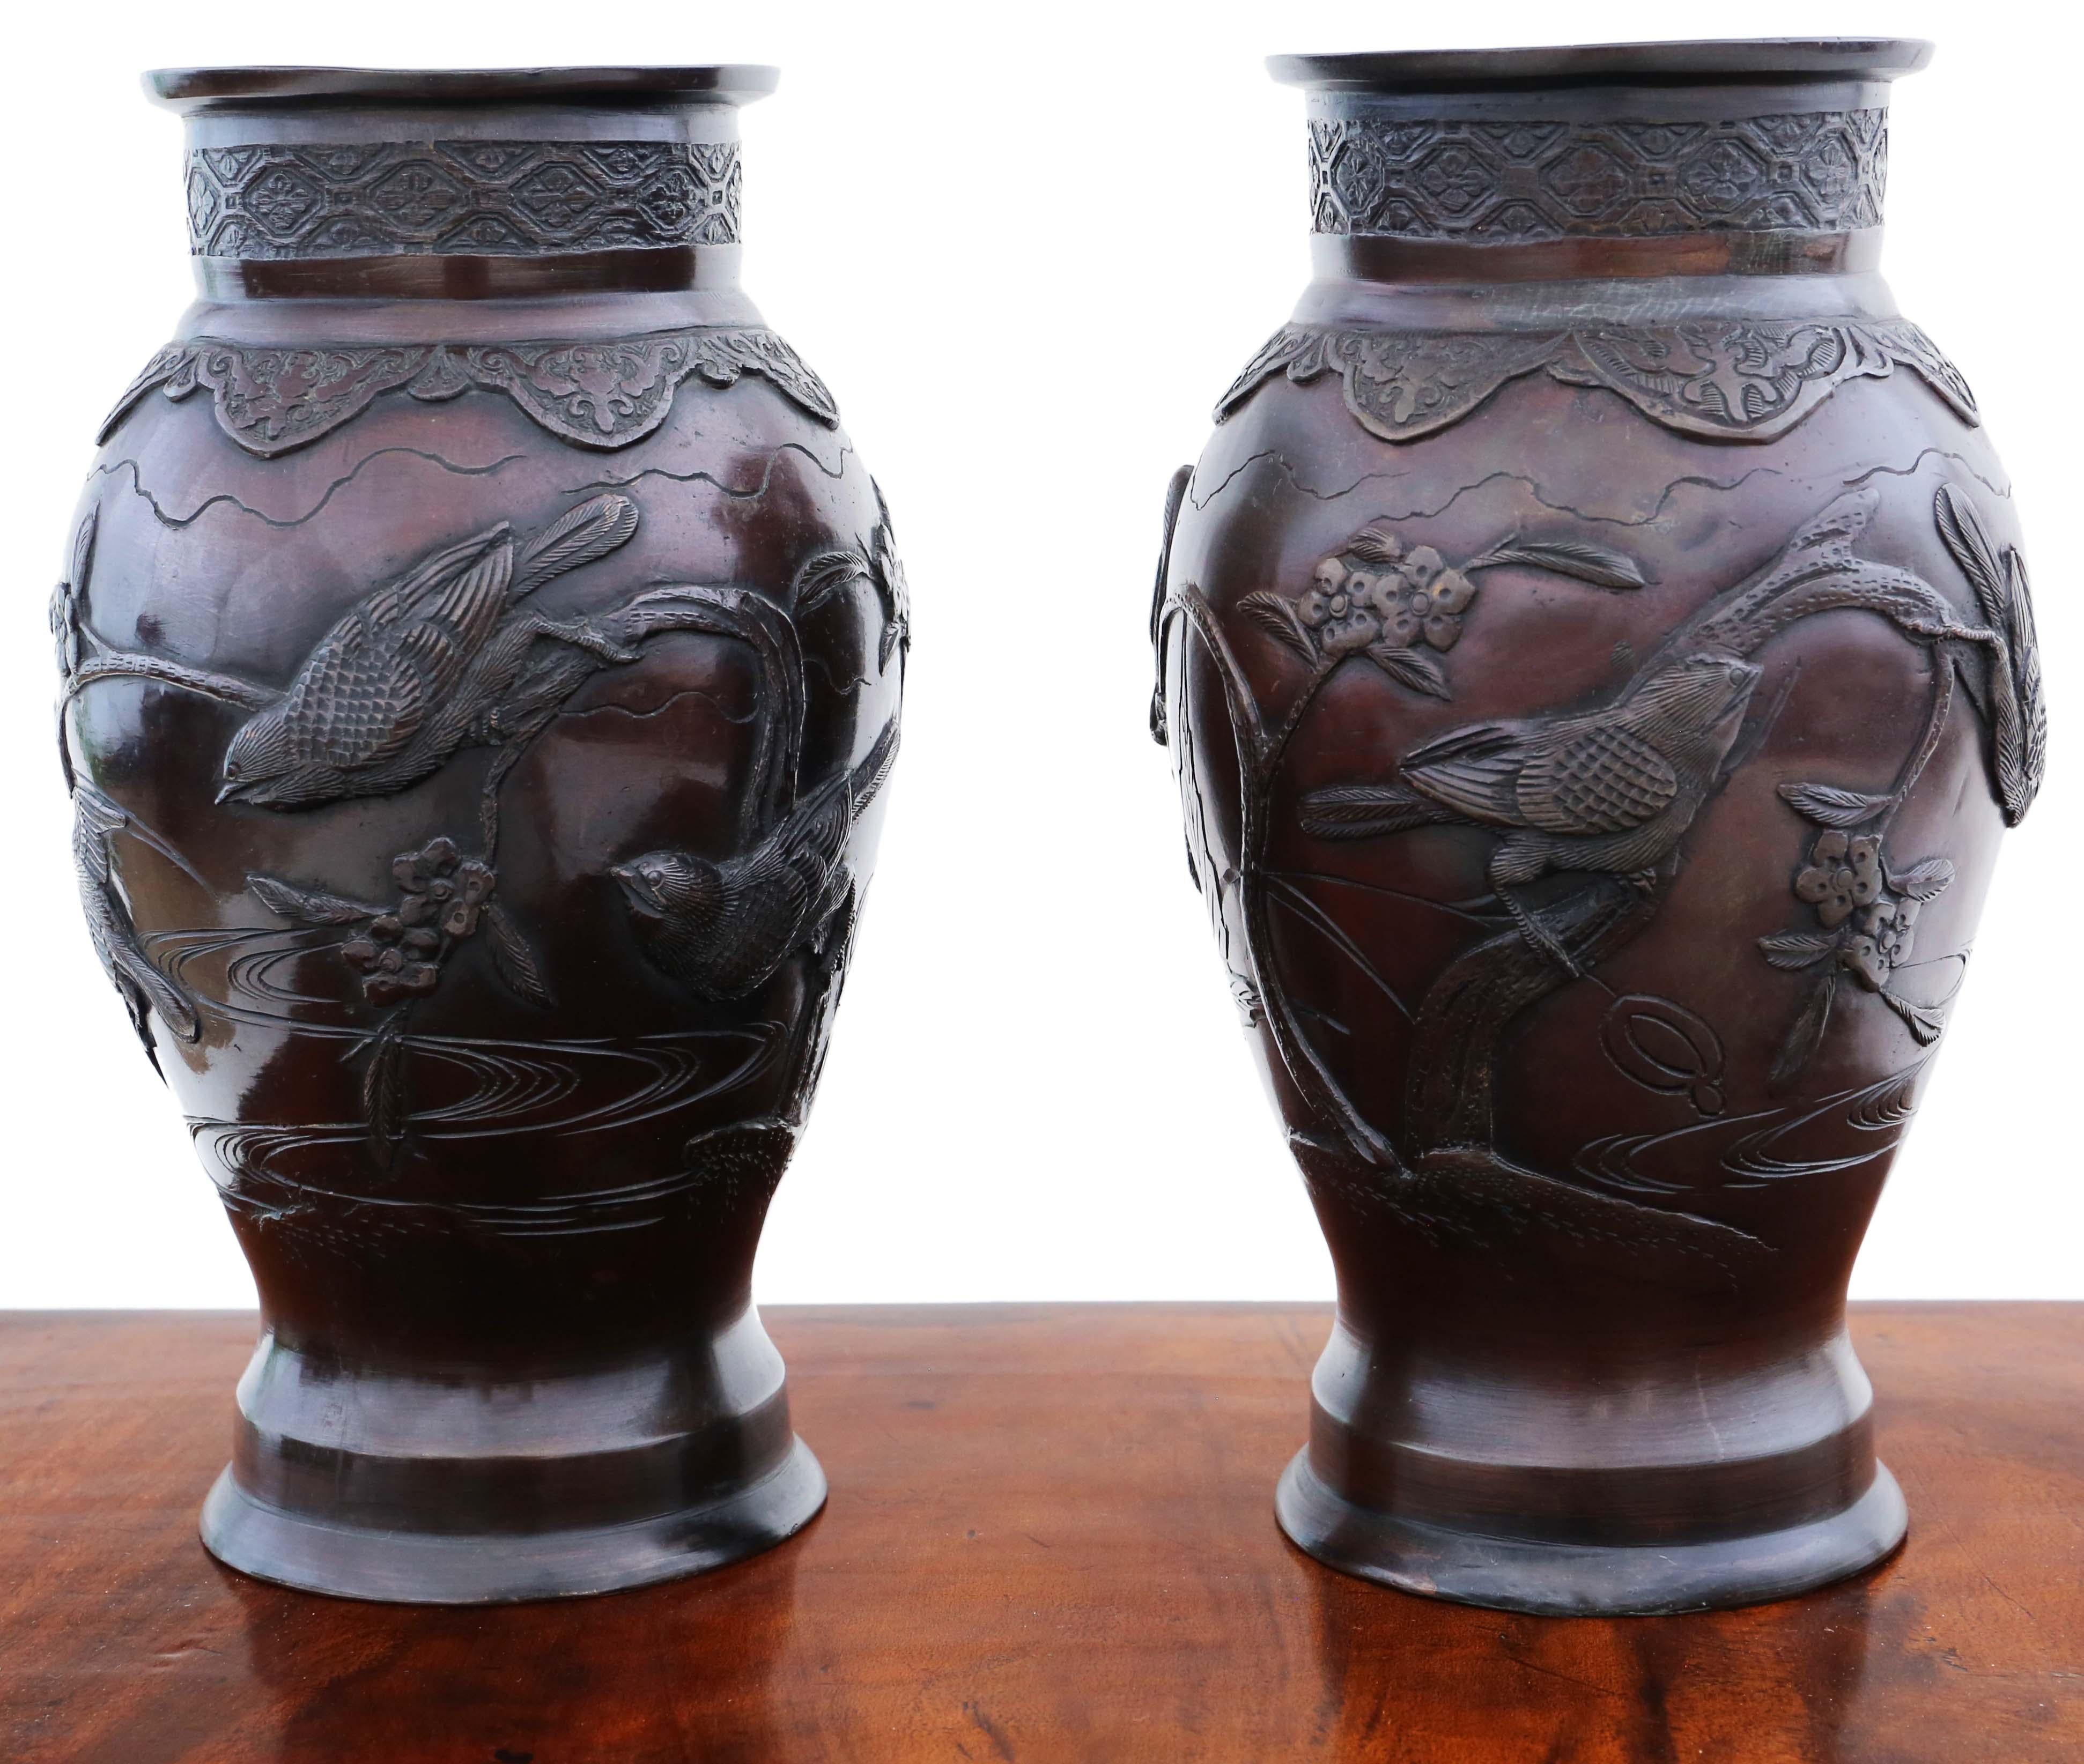 Paire de vases anciens en bronze de qualité japonaise, 19e siècle, période Meiji. Pièces d'Artistics avec signature sur les bases. 

Il serait magnifique au bon endroit. Design/One attrayant avec des oiseaux et des plantes.

Dimensions totales